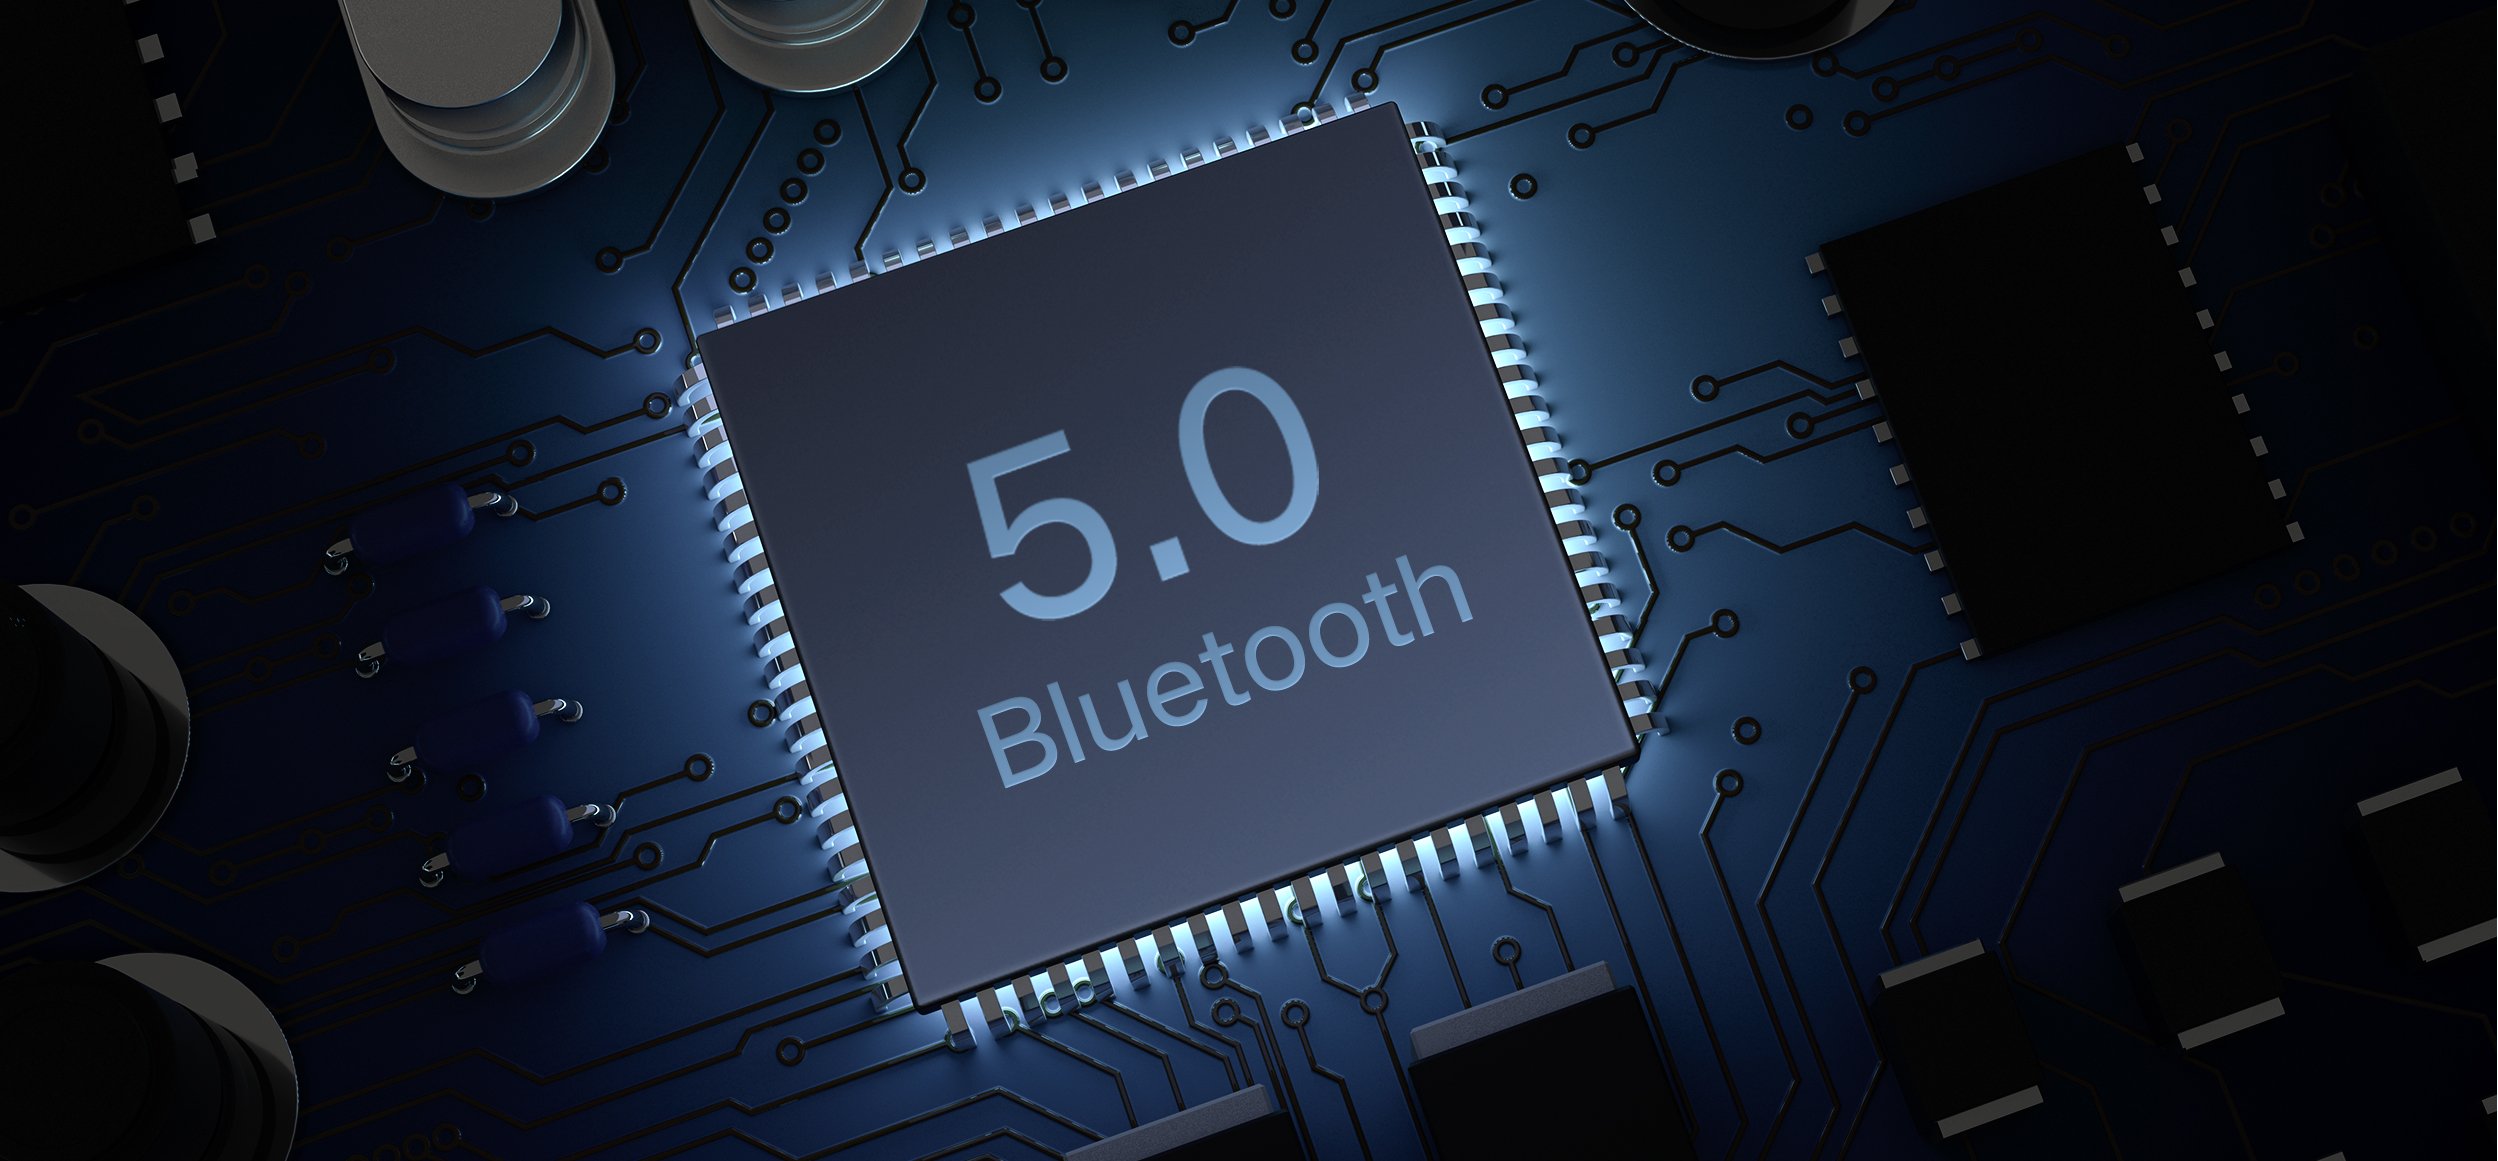 Hızlı ve kararlı bağlantı için Bluetooth 5.0Çok çeşitli cihazlarla uyumluluk, istikrarlı bir sinyal, yüksek aktarım hızları ve güçlü parazit azaltma özellikleri sağlayan entegre Bluetooth 5.0 çipiyle kablosuz özgürlüğün keyfini yaşayın.